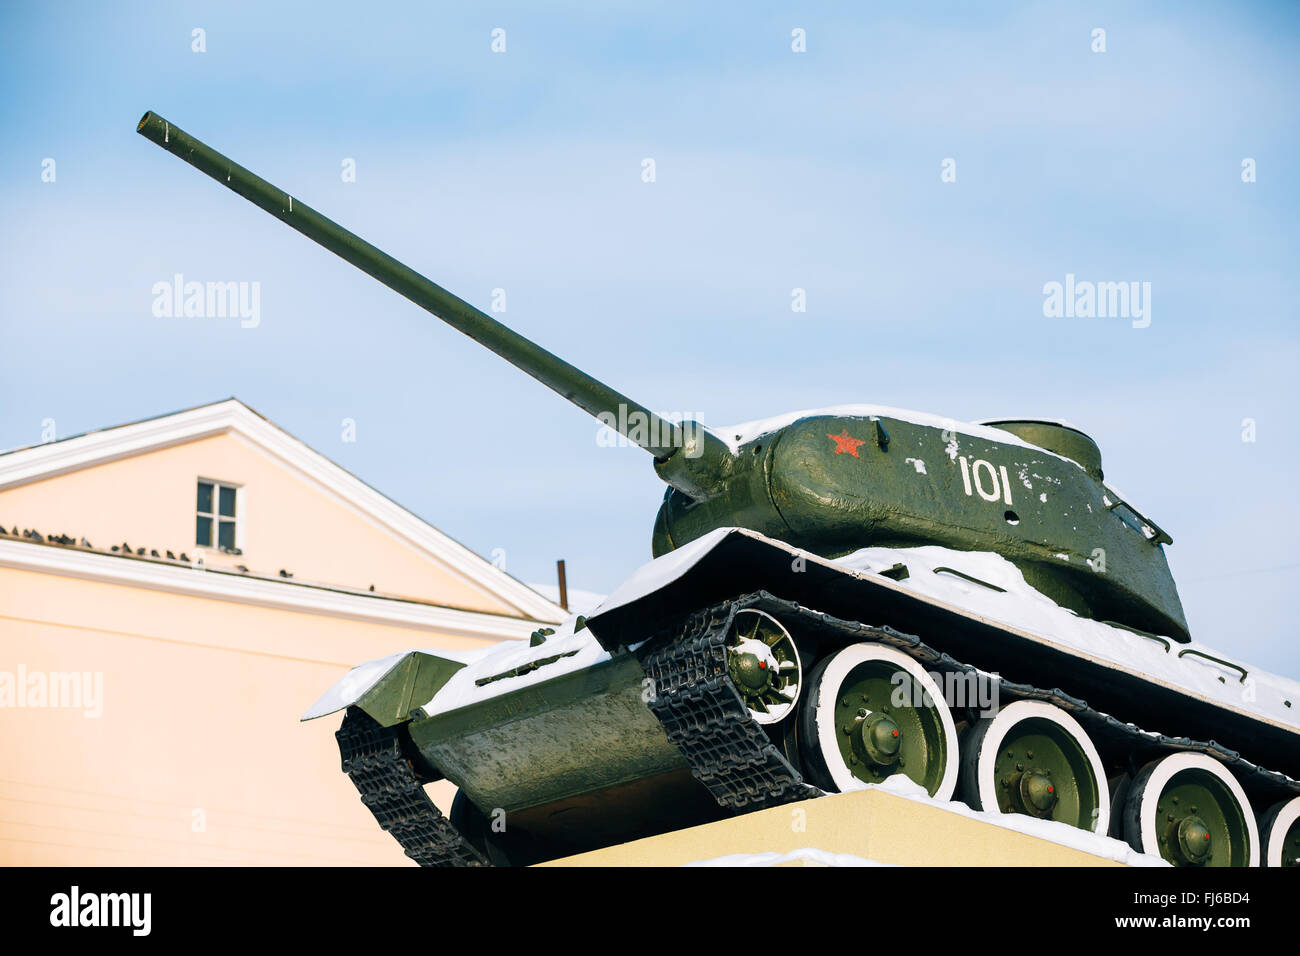 Gomel, Bielorussia - 23 Gennaio 2016: il vecchio carro armato sovietico T-34 come il monumento al soldato sovietico liberato Gomel. Bielorussia Foto Stock